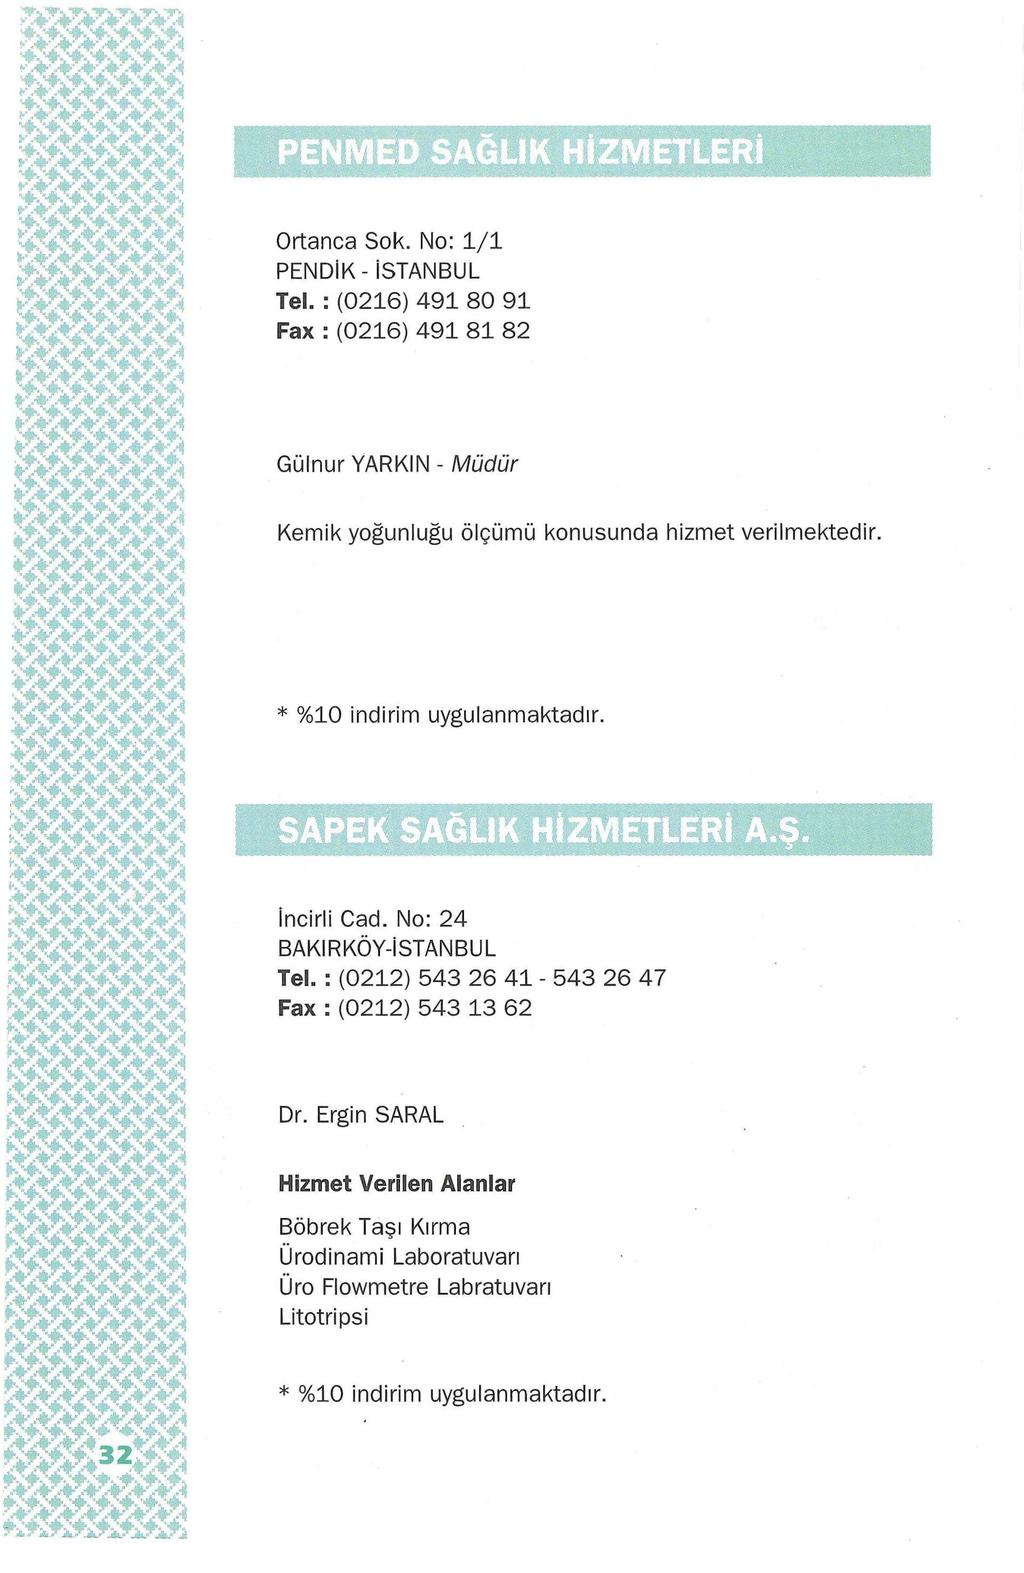 Ortanca Sok. No: 1/1 PENDiK- istanbul Tel. : (0216) 491 80 91 Fax : (0216) 491 81 82 Gülnur YARKIN-Müdür Kemik yoğunluğu ölçümü konusunda hizmet verilmektedir. * %10 indirim uygulanmaktadır.